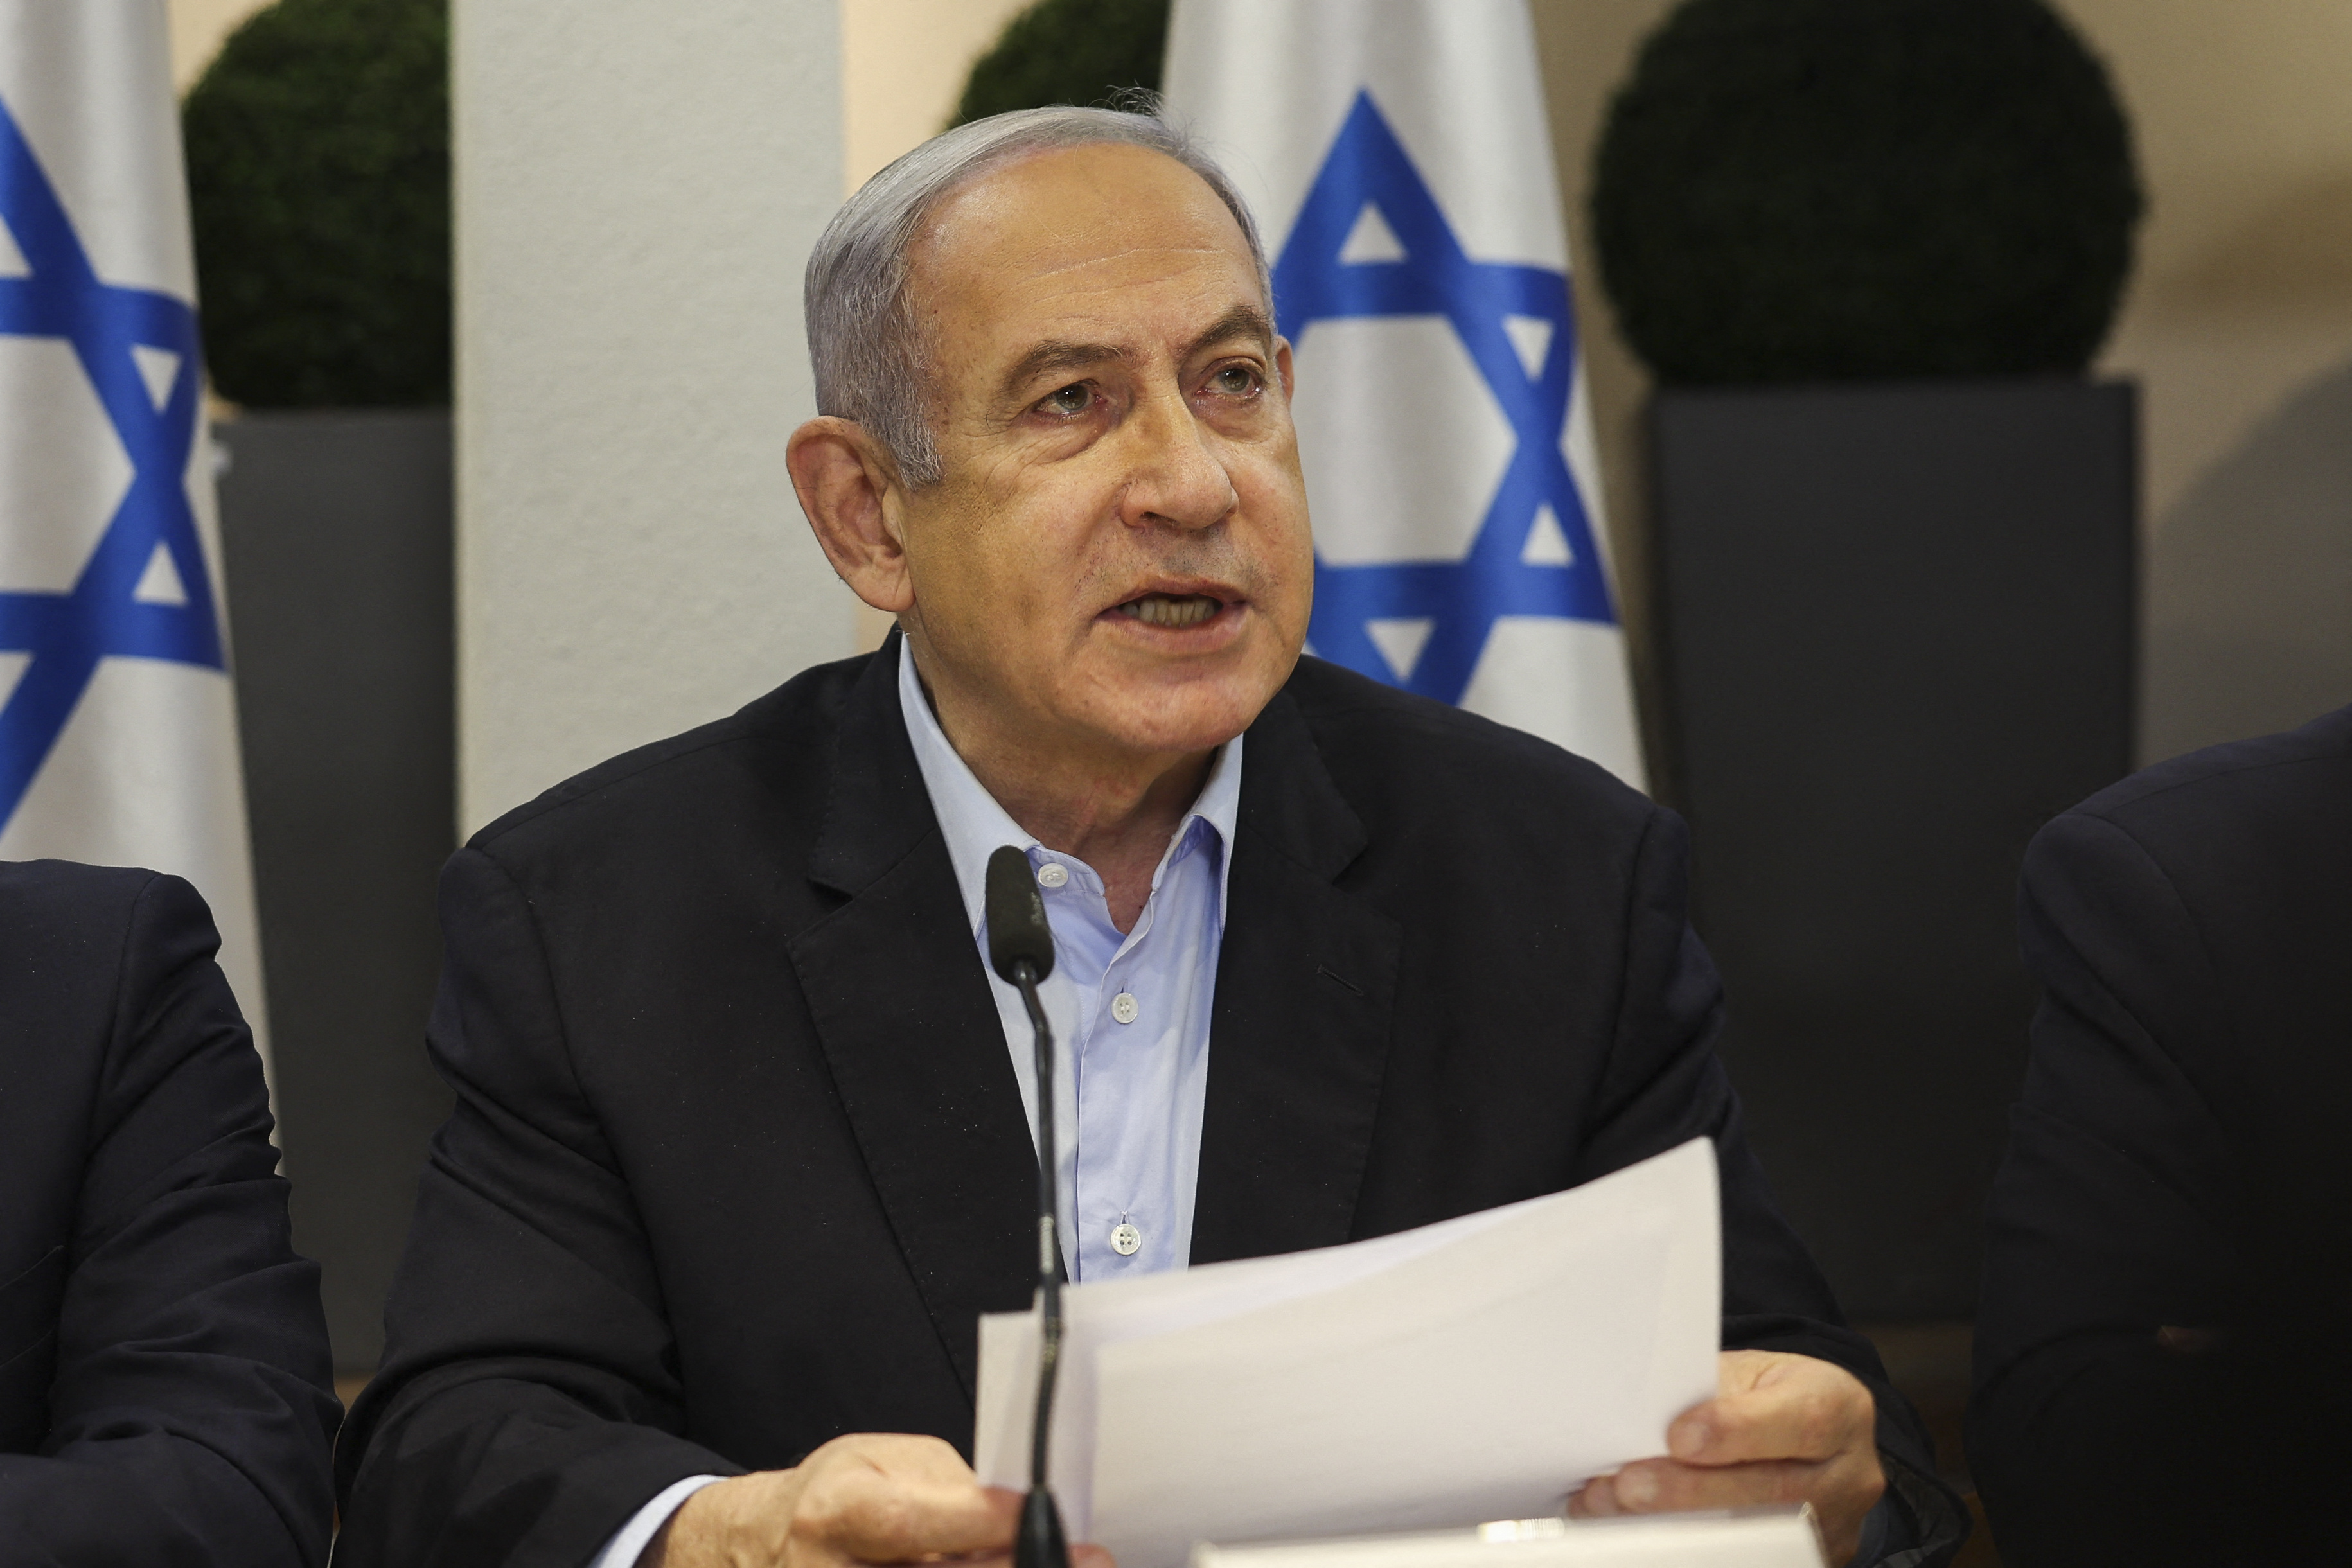 Gobierno israelí decide por unanimidad cerrar el canal Al Yazira en el país